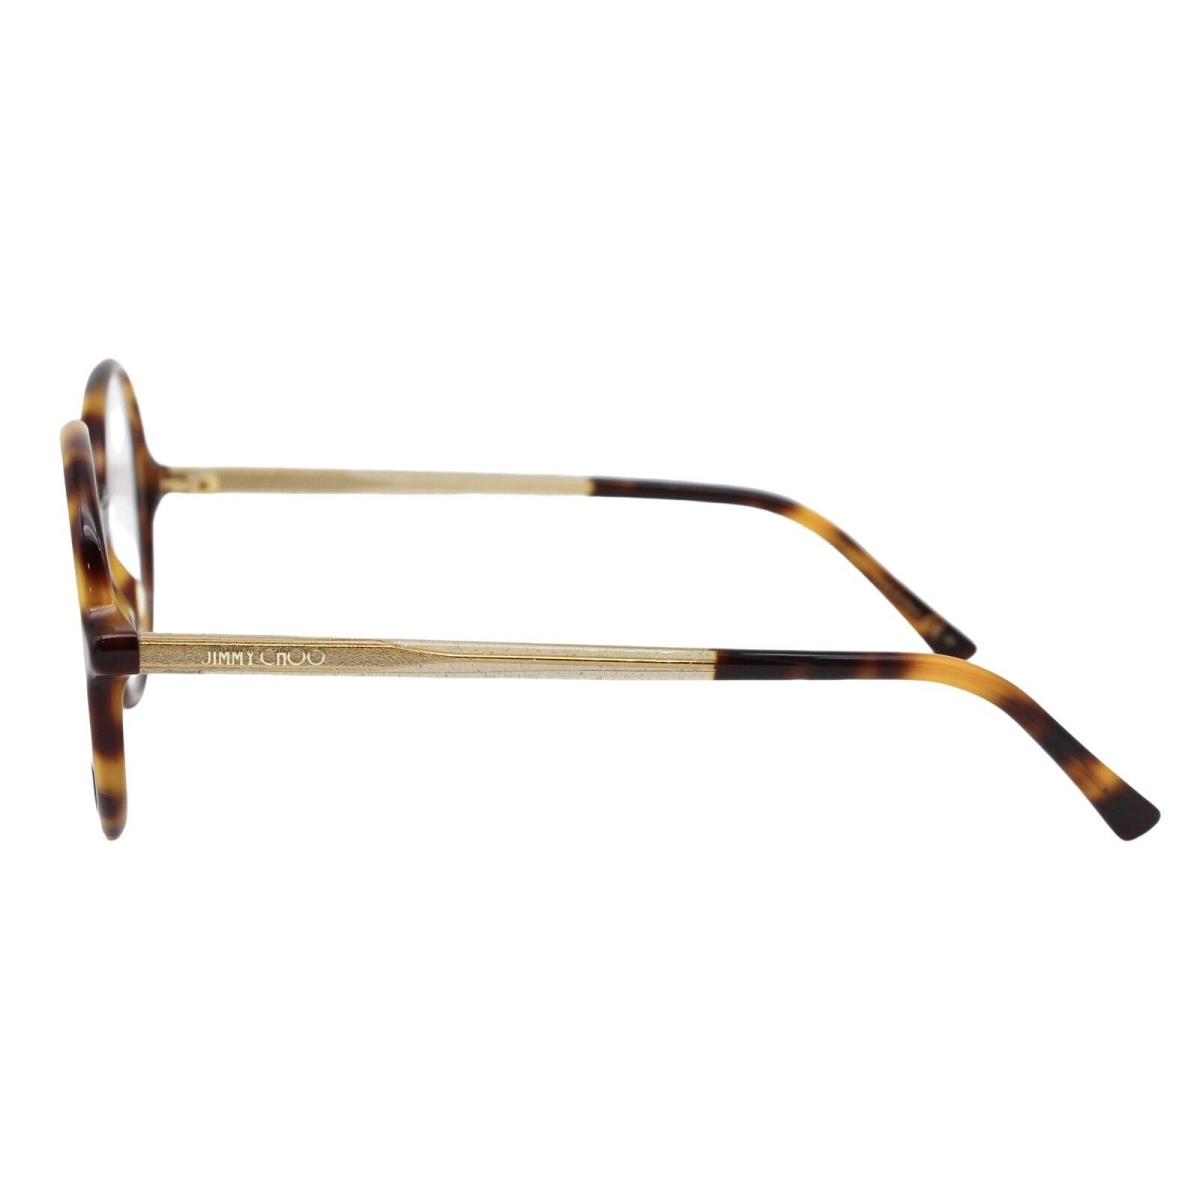 Jimmy Choo eyeglasses  - Frame: Tortoise Gold 0